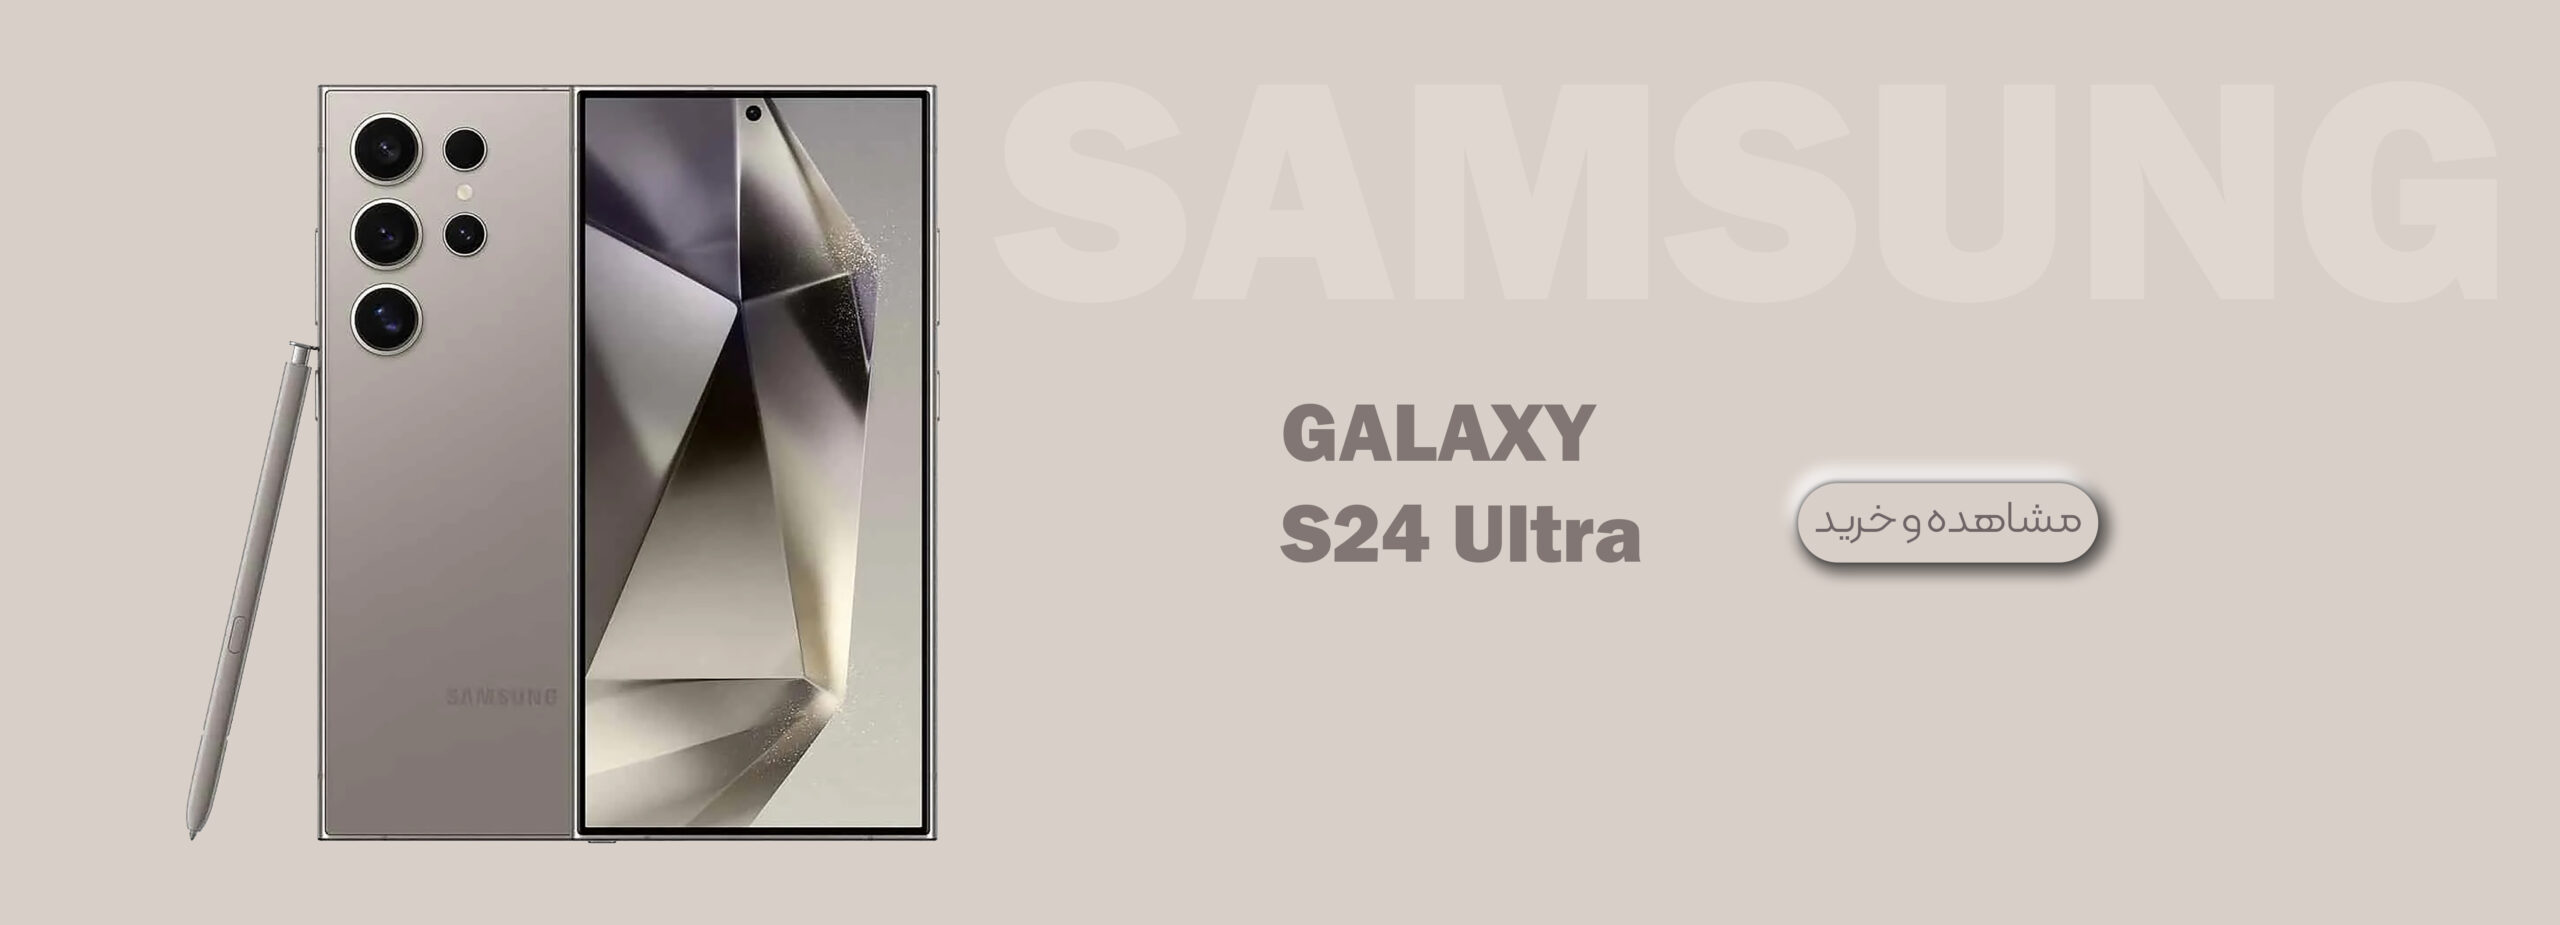 SAMSUNG GALAXY S24 Ultra